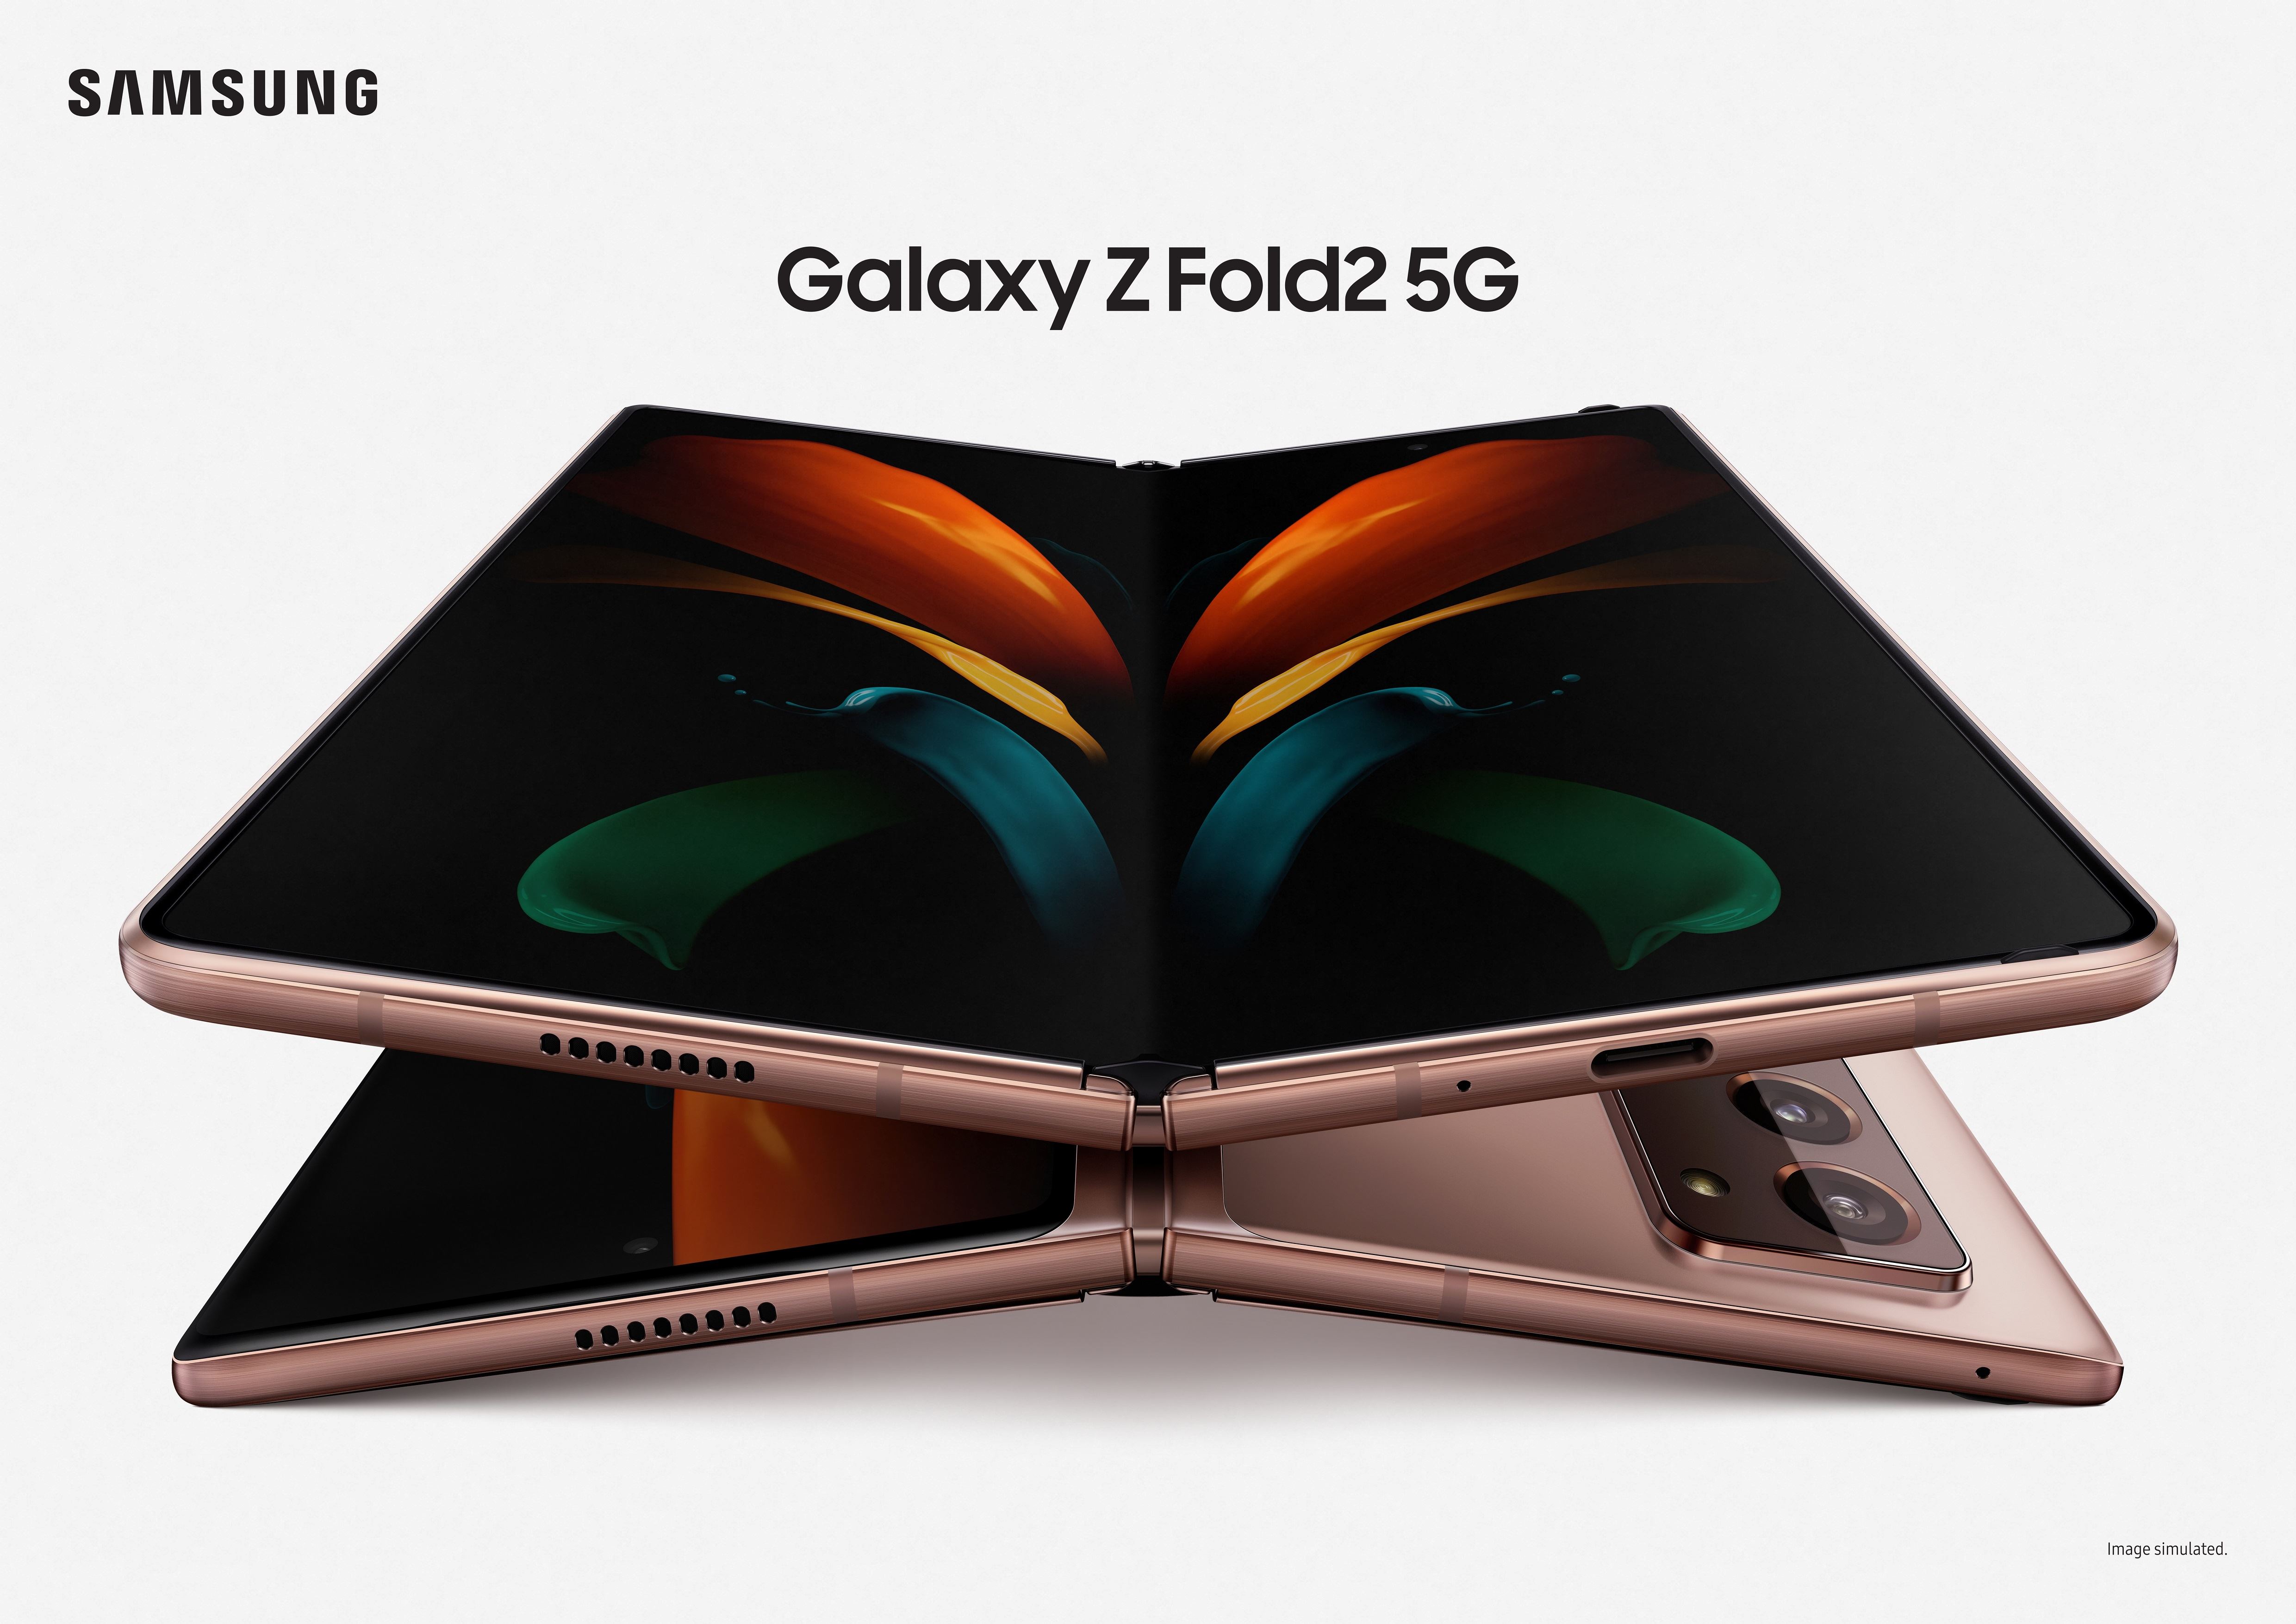 ซัมซุงเปิดตัว Galaxy Z Fold2 5G สุดยอดนวัตกรรมพลิกโฉมโลกอนาคต